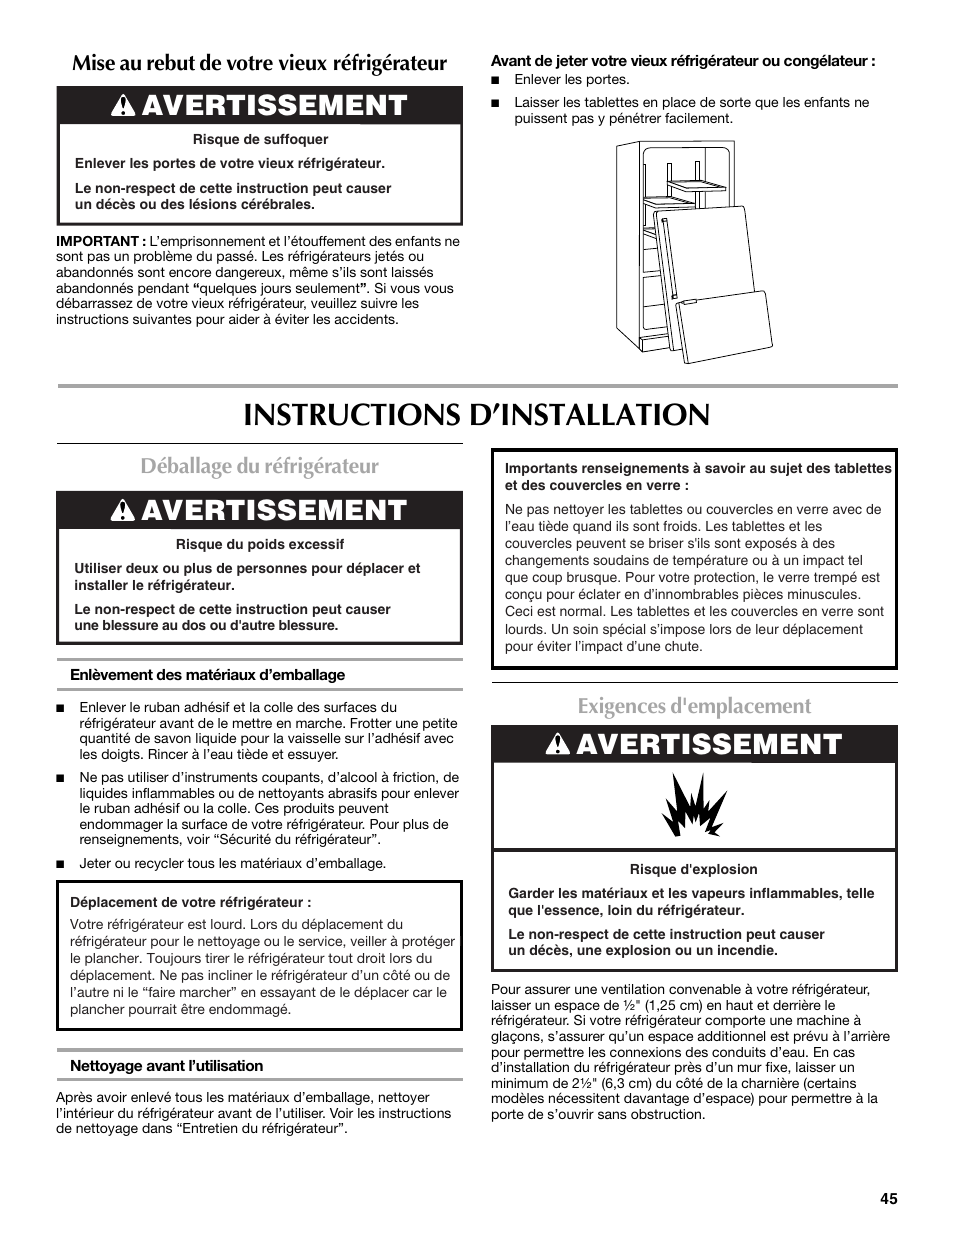 Instructions d’installation, Avertissement, Mise au rebut de votre vieux réfrigérateur | Déballage du réfrigérateur, Exigences d'emplacement | Maytag MBF2562HEW User Manual | Page 45 / 66